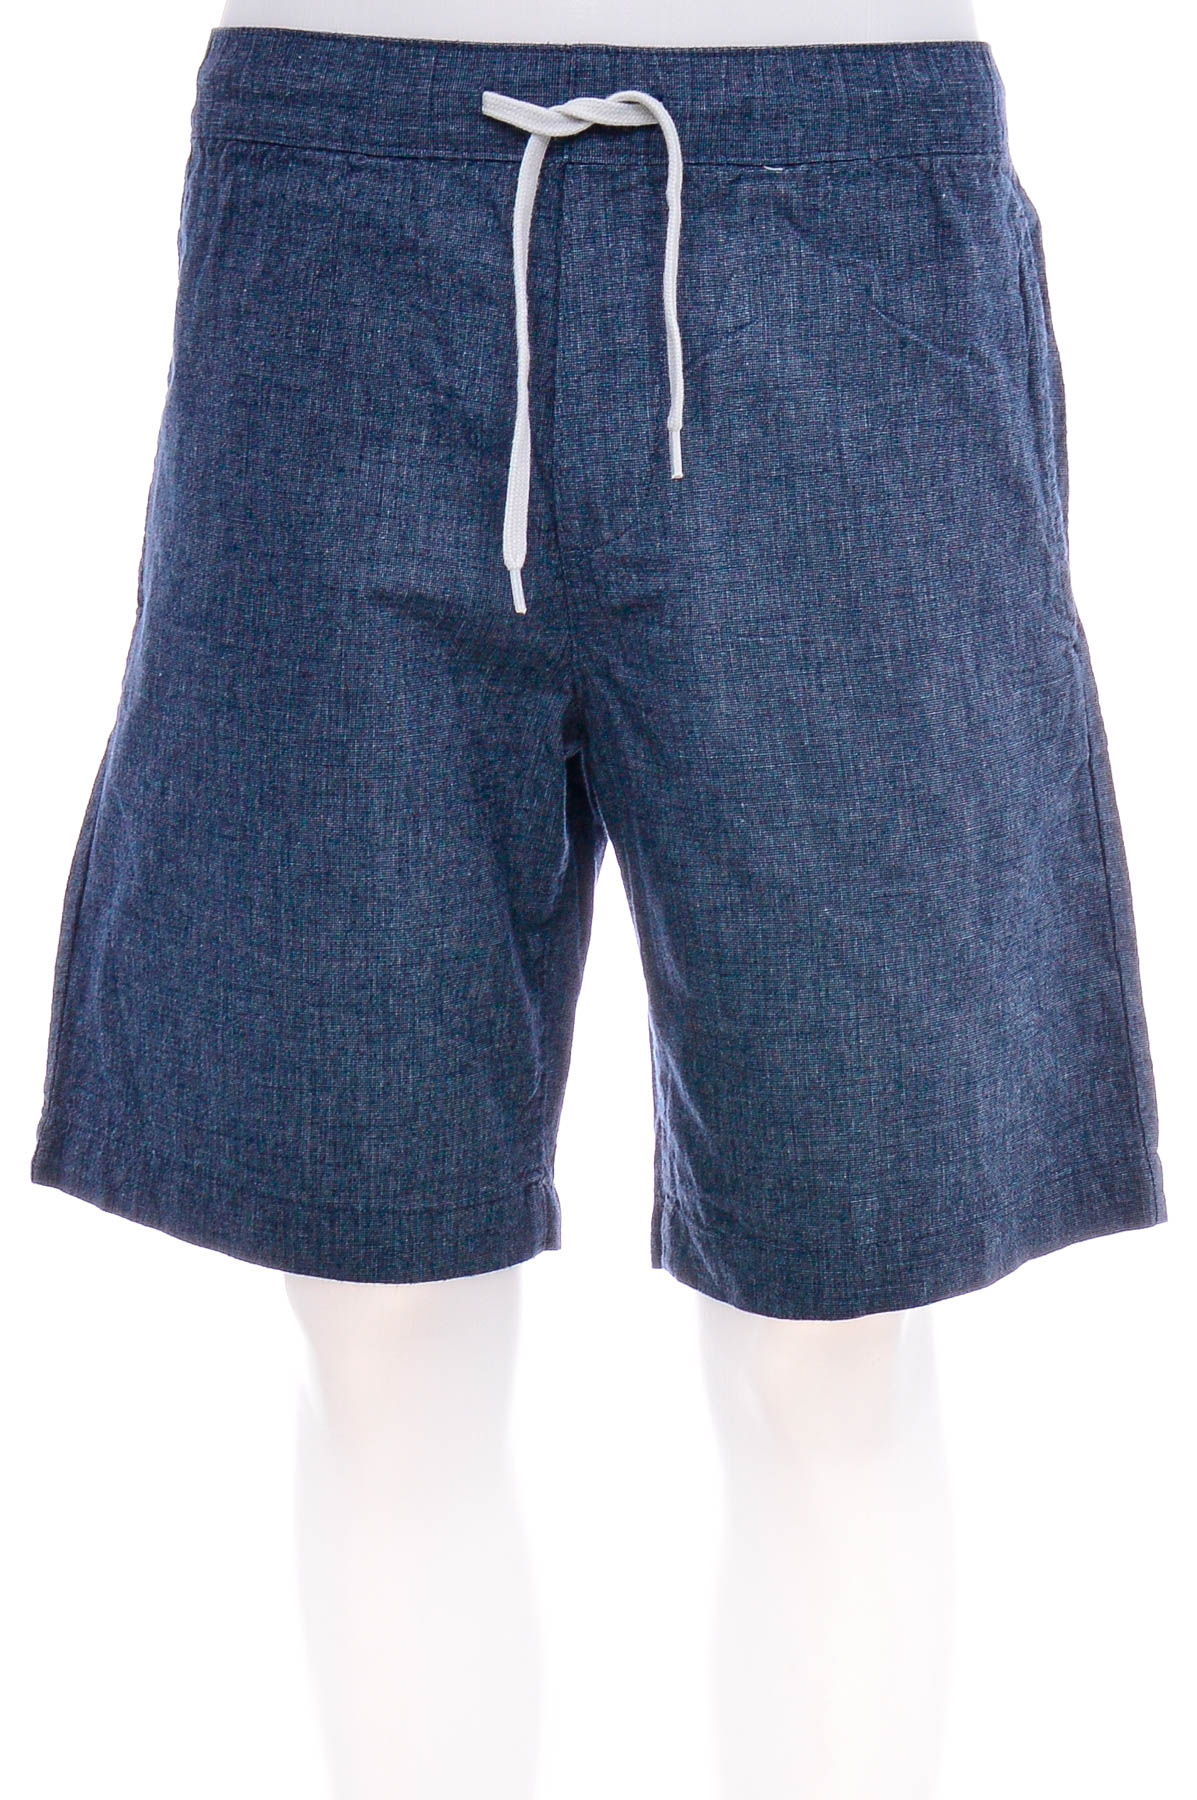 Pantaloni scurți bărbați - H&M - 0